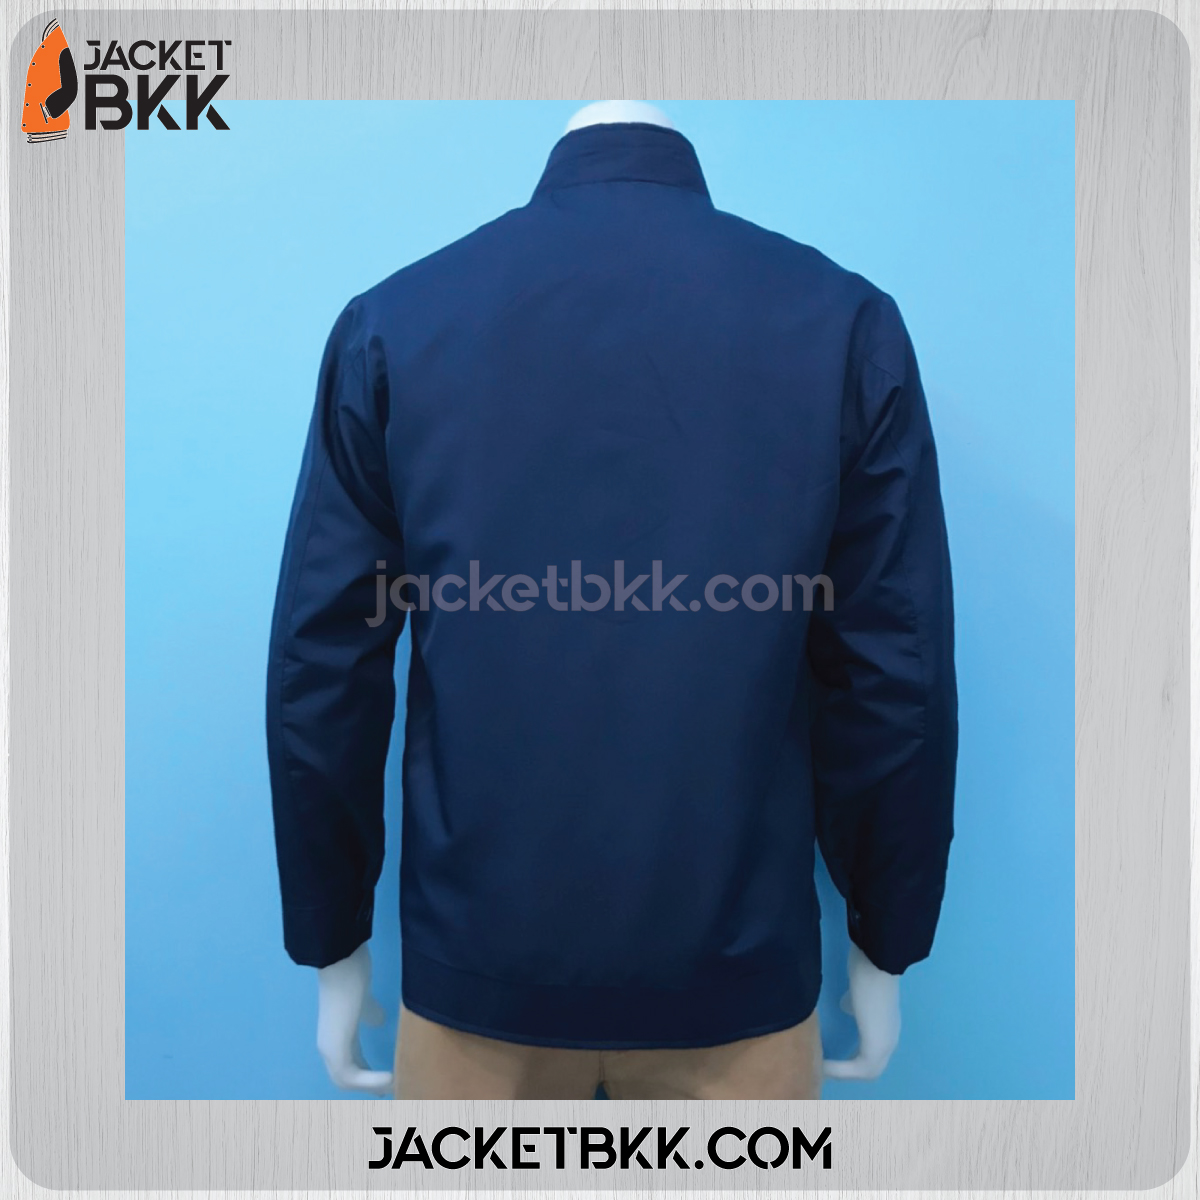 JKM-04 เสื้อแจ็คเก็ต ผ้าไมโคร แบบคอตั้ง สีกรมท่า